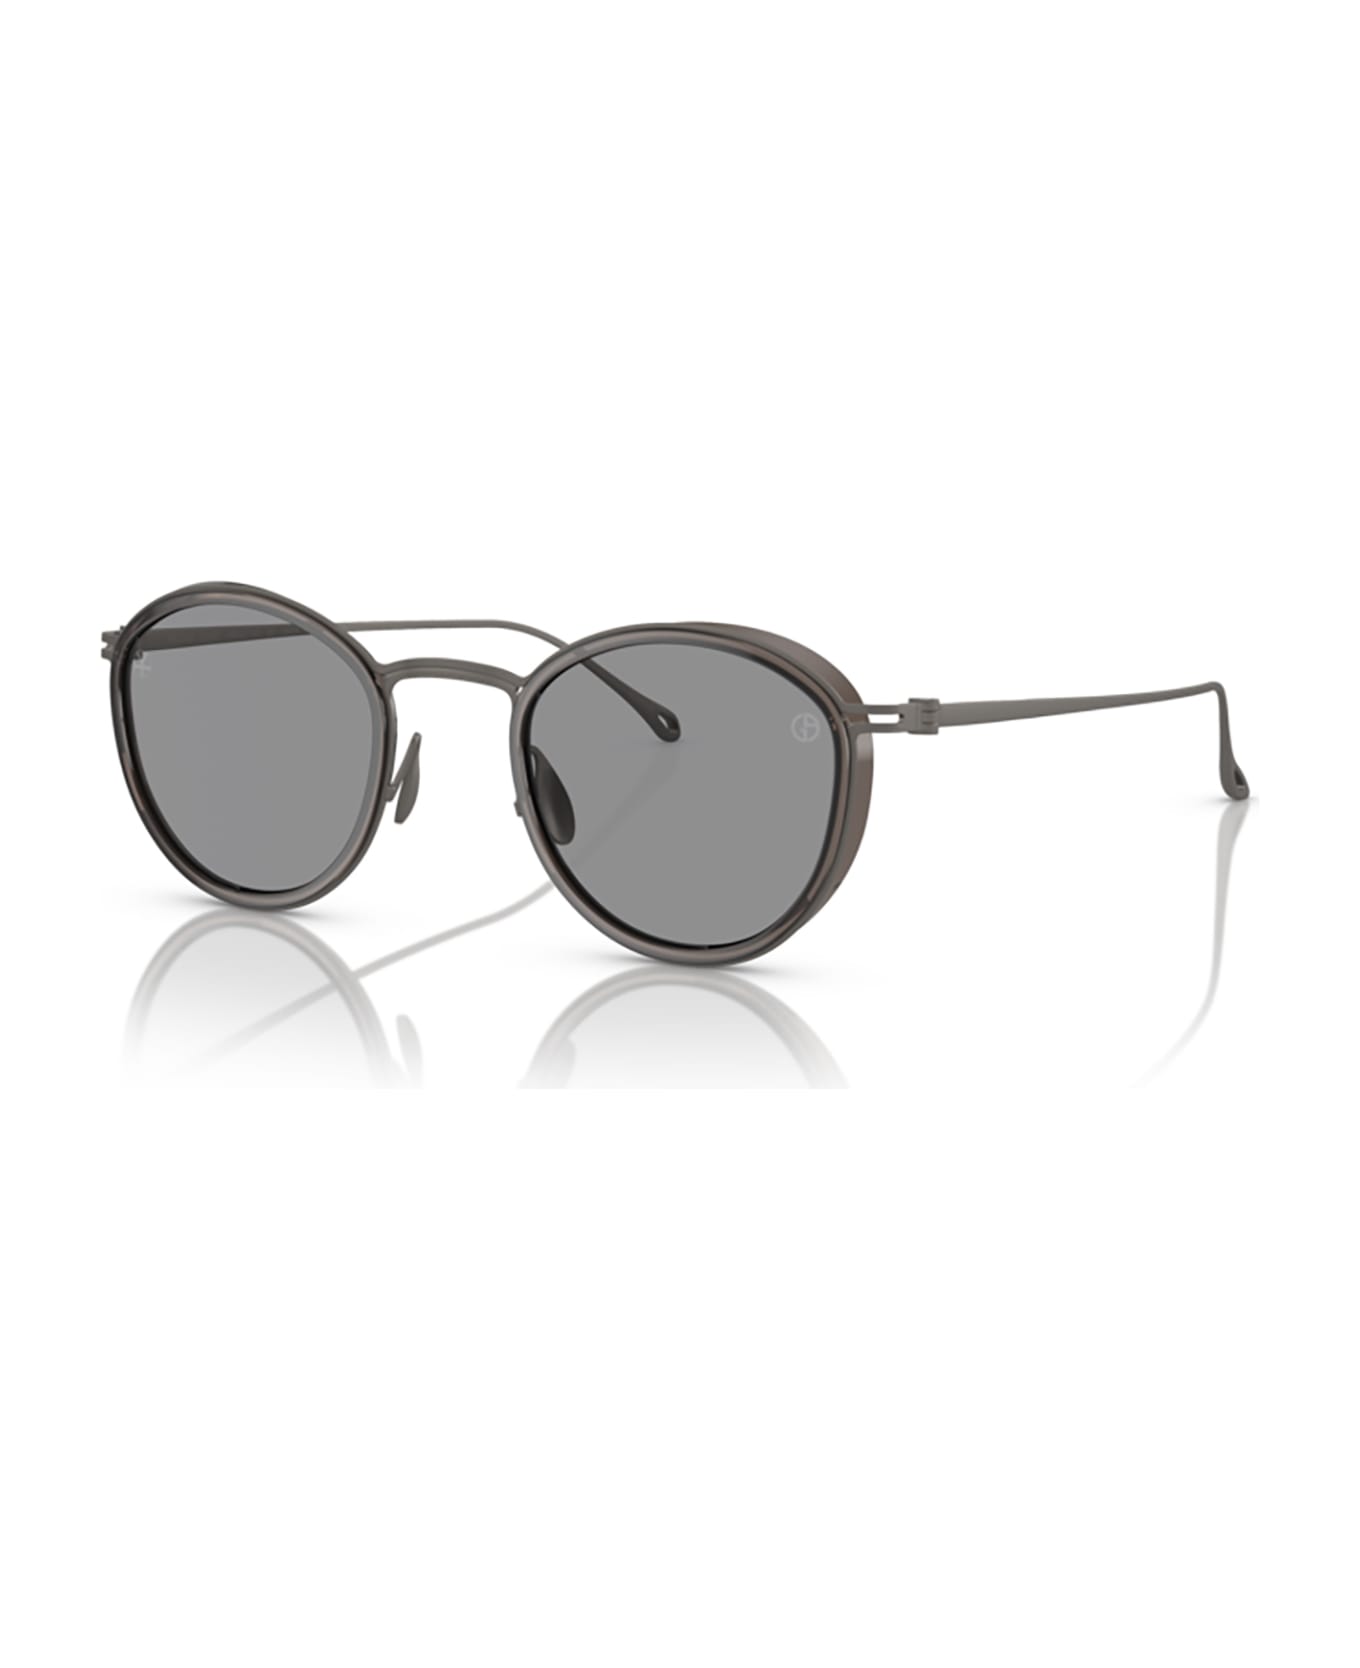 Giorgio Armani Ar6148t Transparent Grey Sunglasses - Transparent Grey